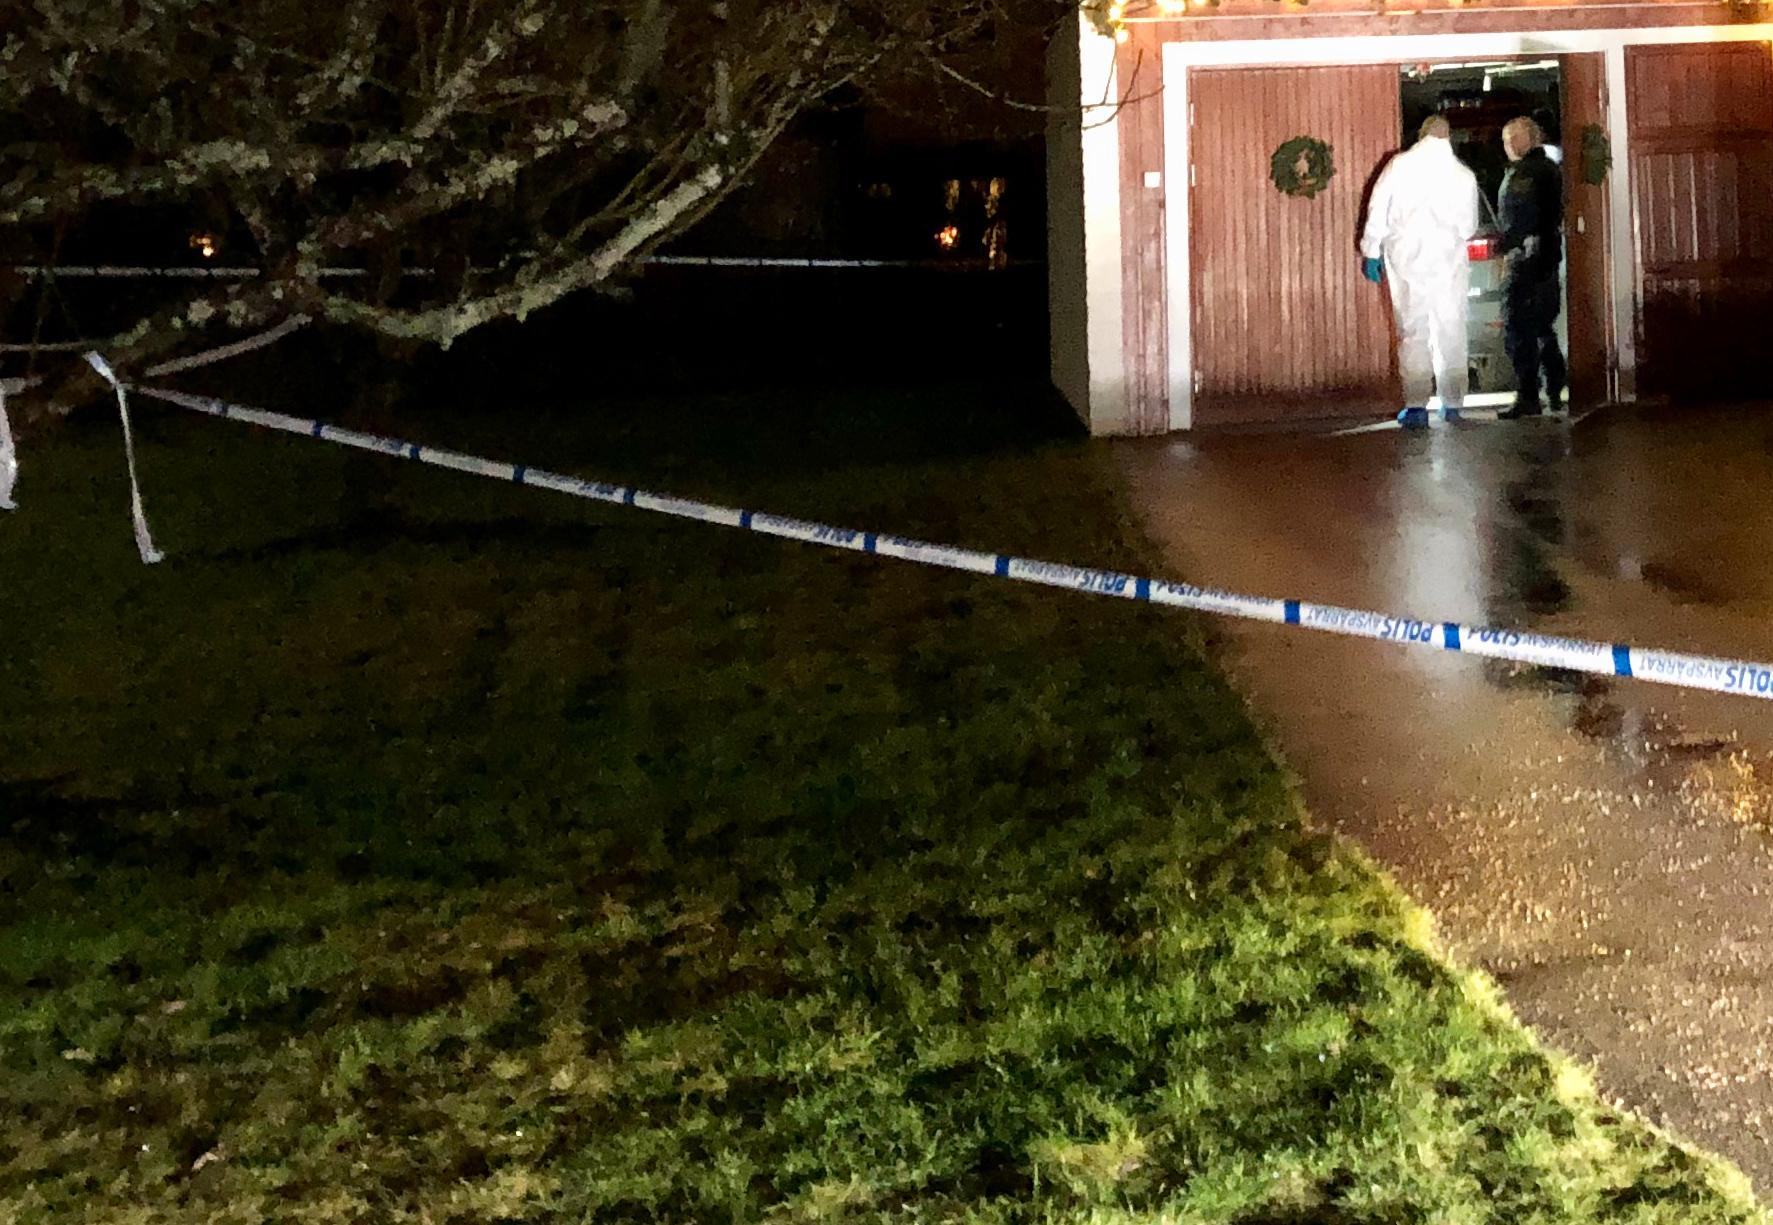 En kvinna hittades död i en villa i Västerås på julafton.